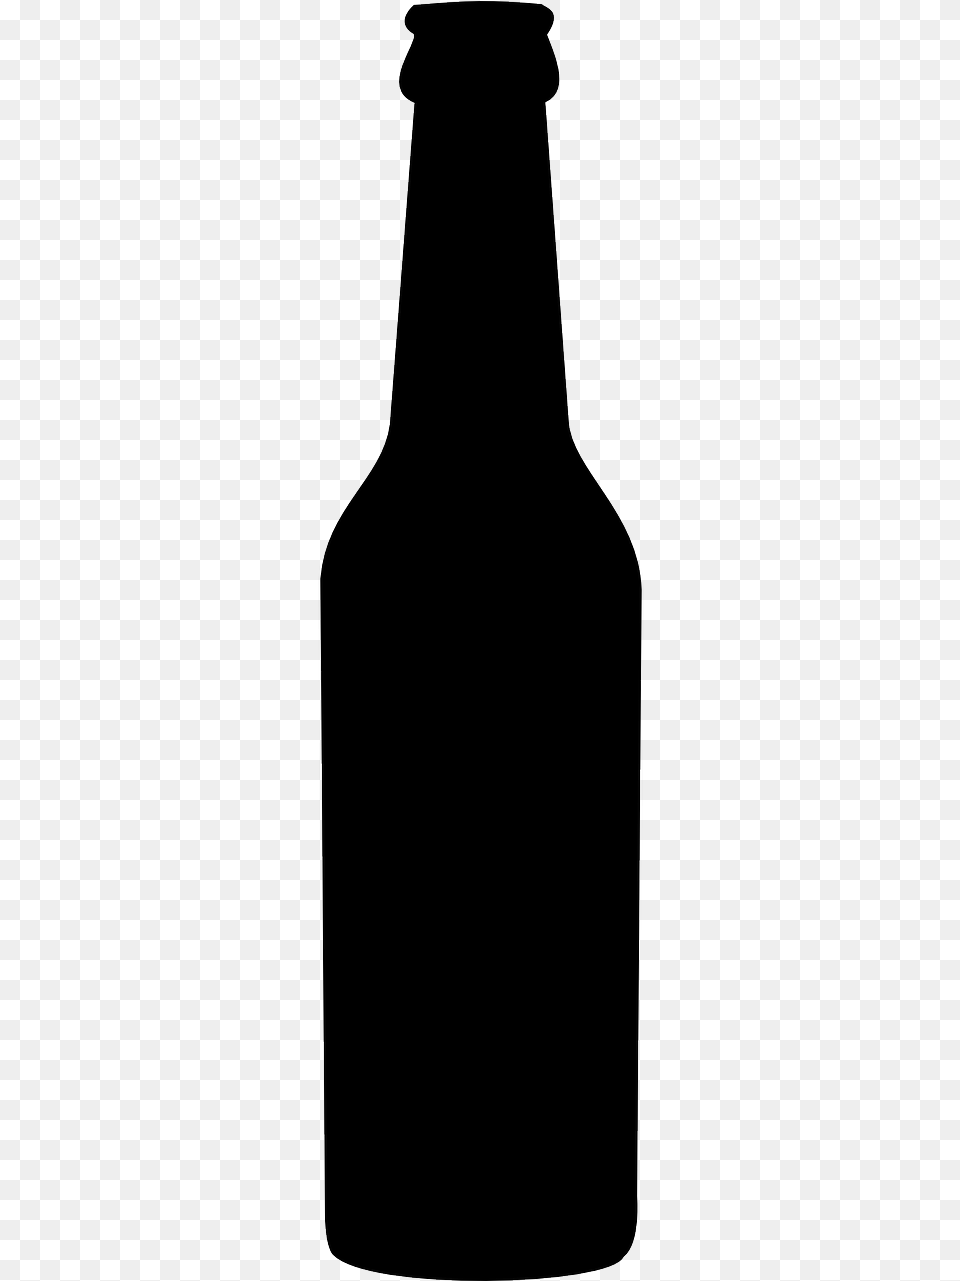 Vector Beer Bottle, Alcohol, Beverage, Beer Bottle, Liquor Png Image